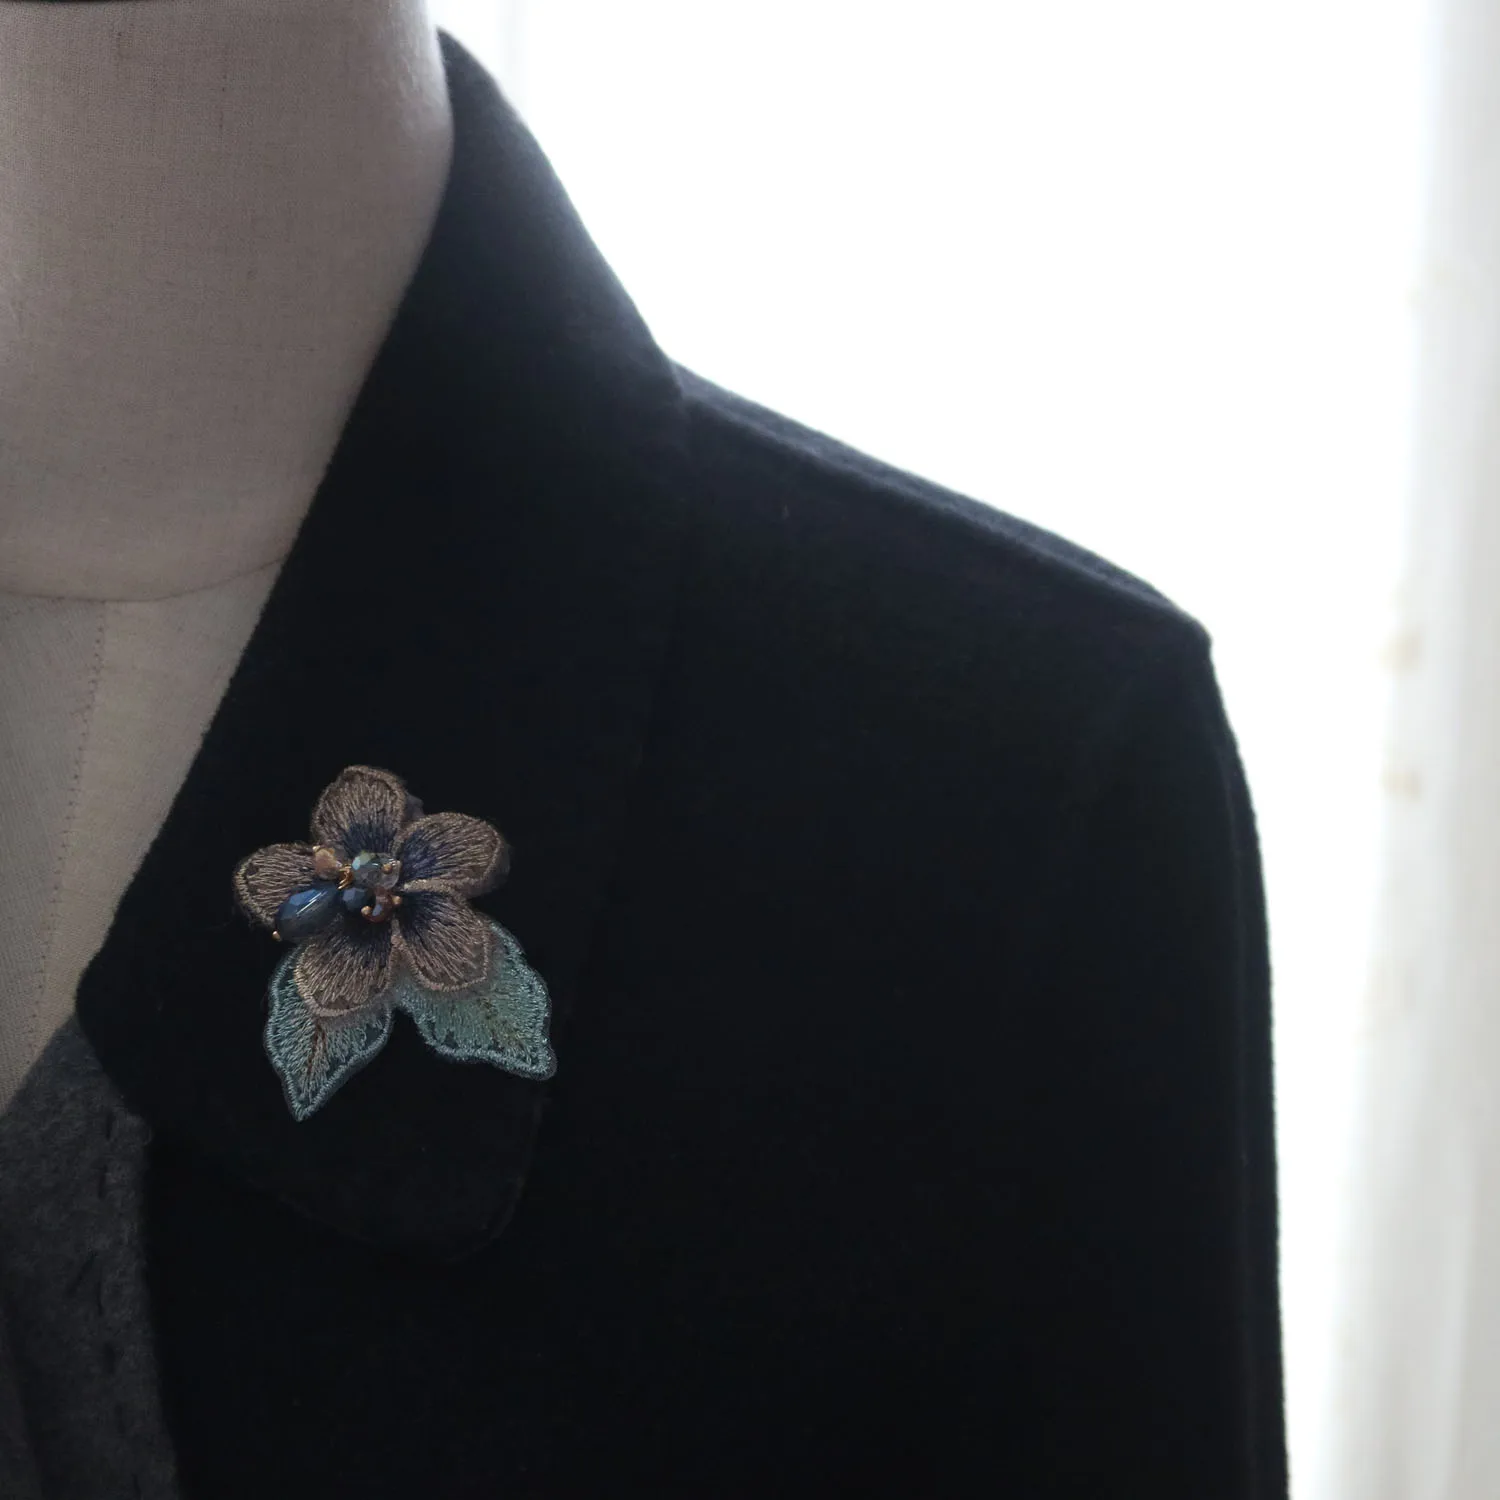 3D gėlių zawalcowany lopai drabužiai Siūti ant pleistro dekoratyvinis parches bordados para ropa Siuvinėjimas, aplikacijos drabužių